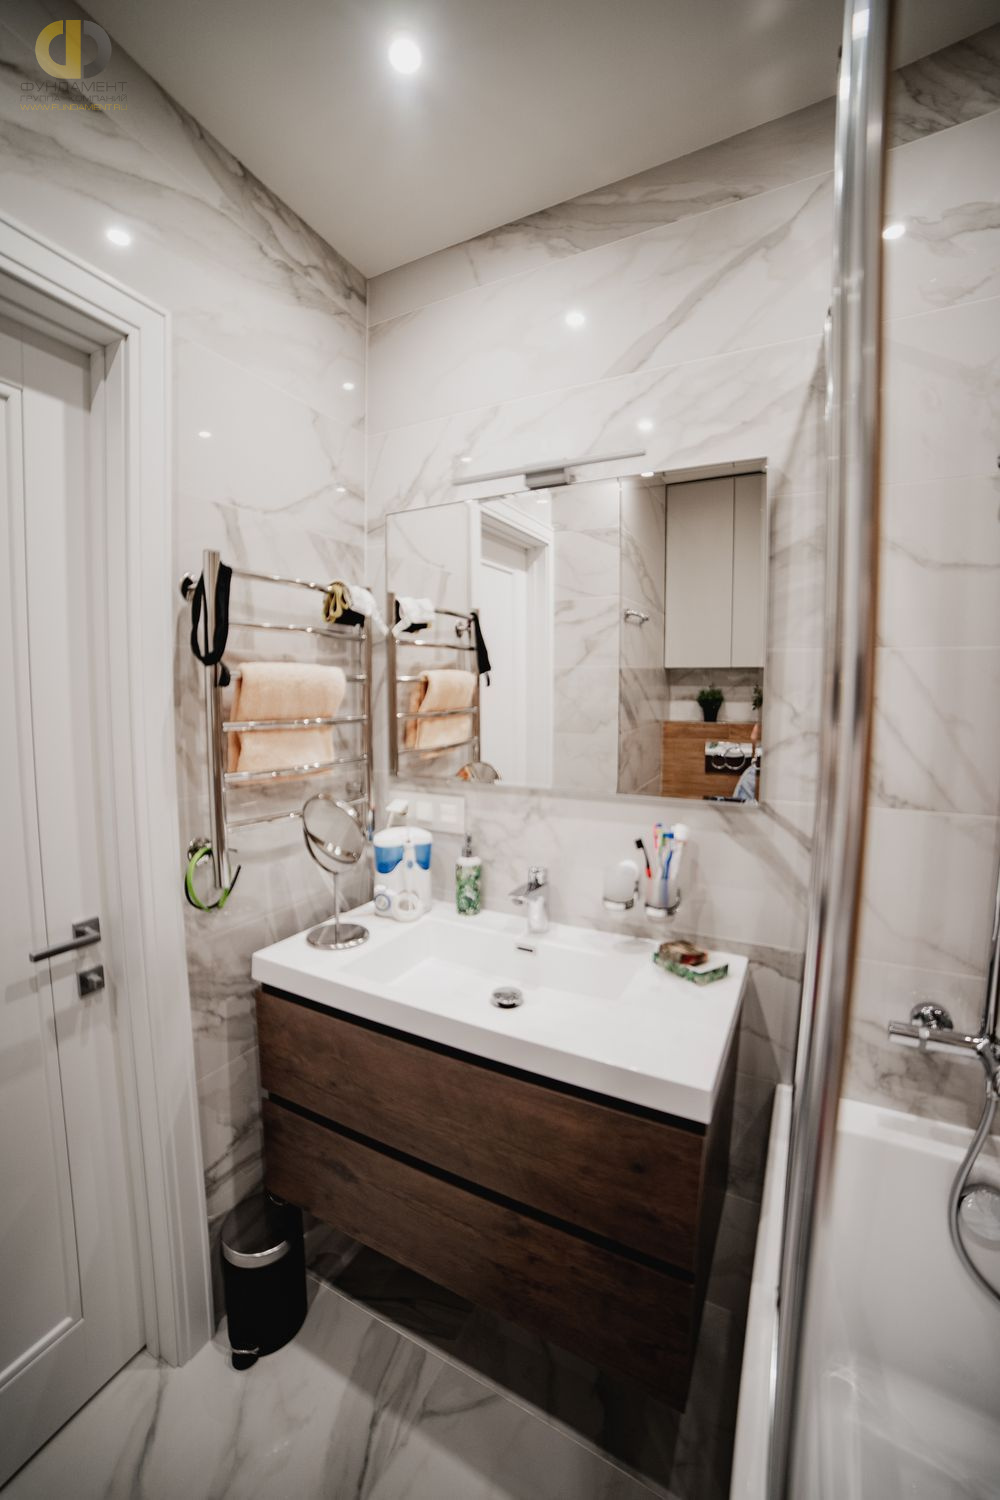 Фото ремонта ванной в трёхкомнатной квартире 89 кв.м в современном стиле